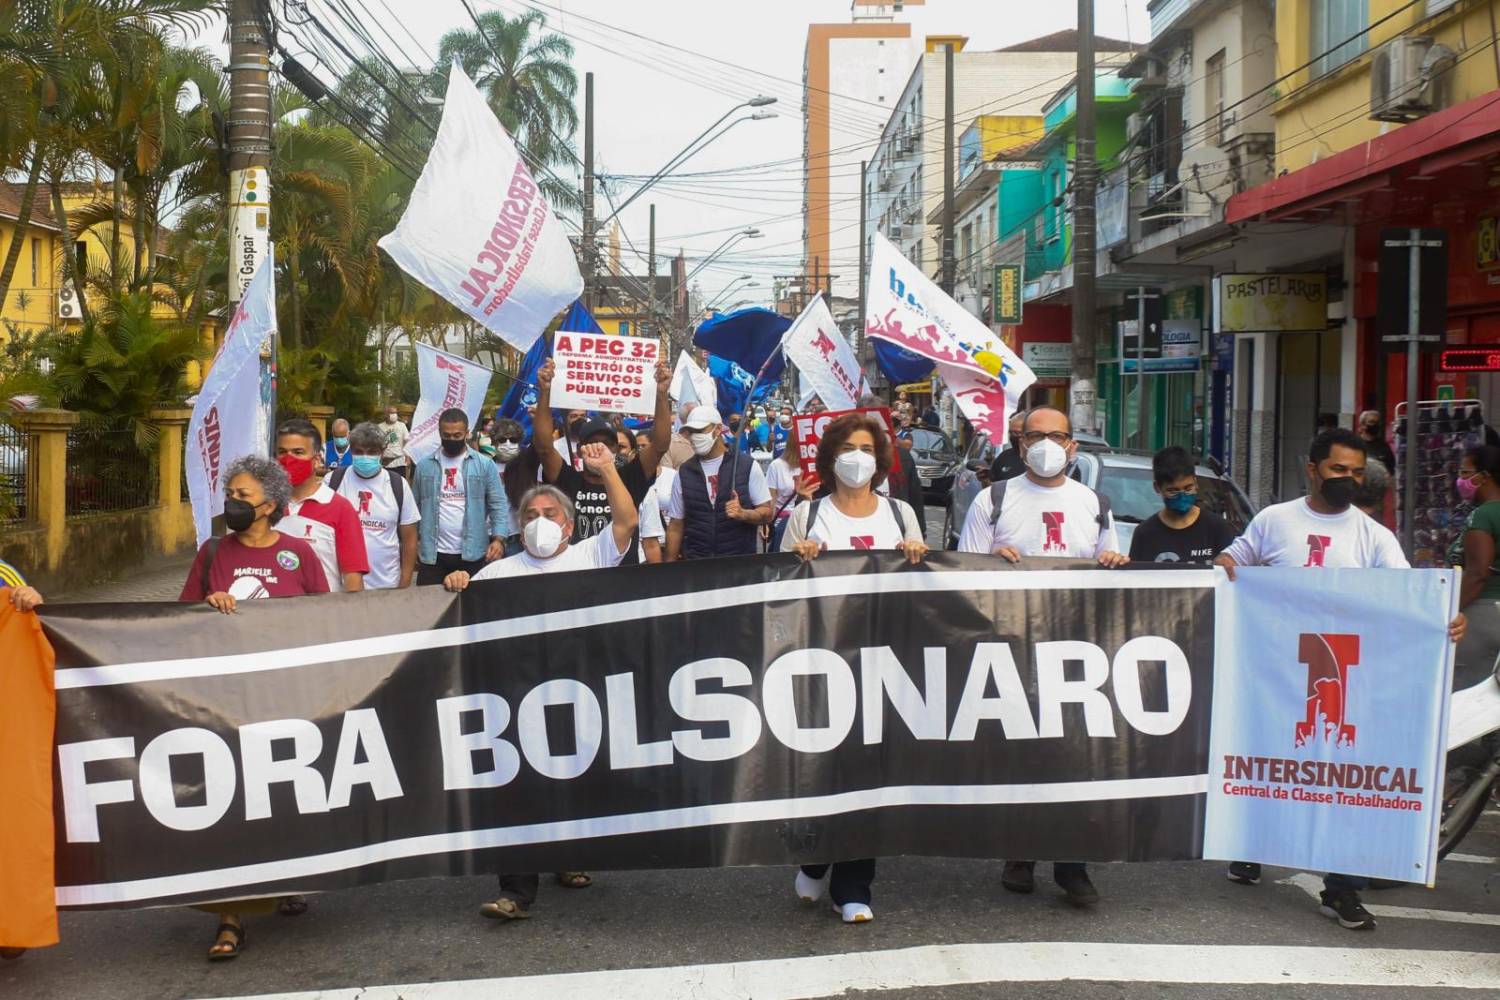 Protesto contra a PEC 32 e pelo Fora Bolsonaro em São Vicente/SP